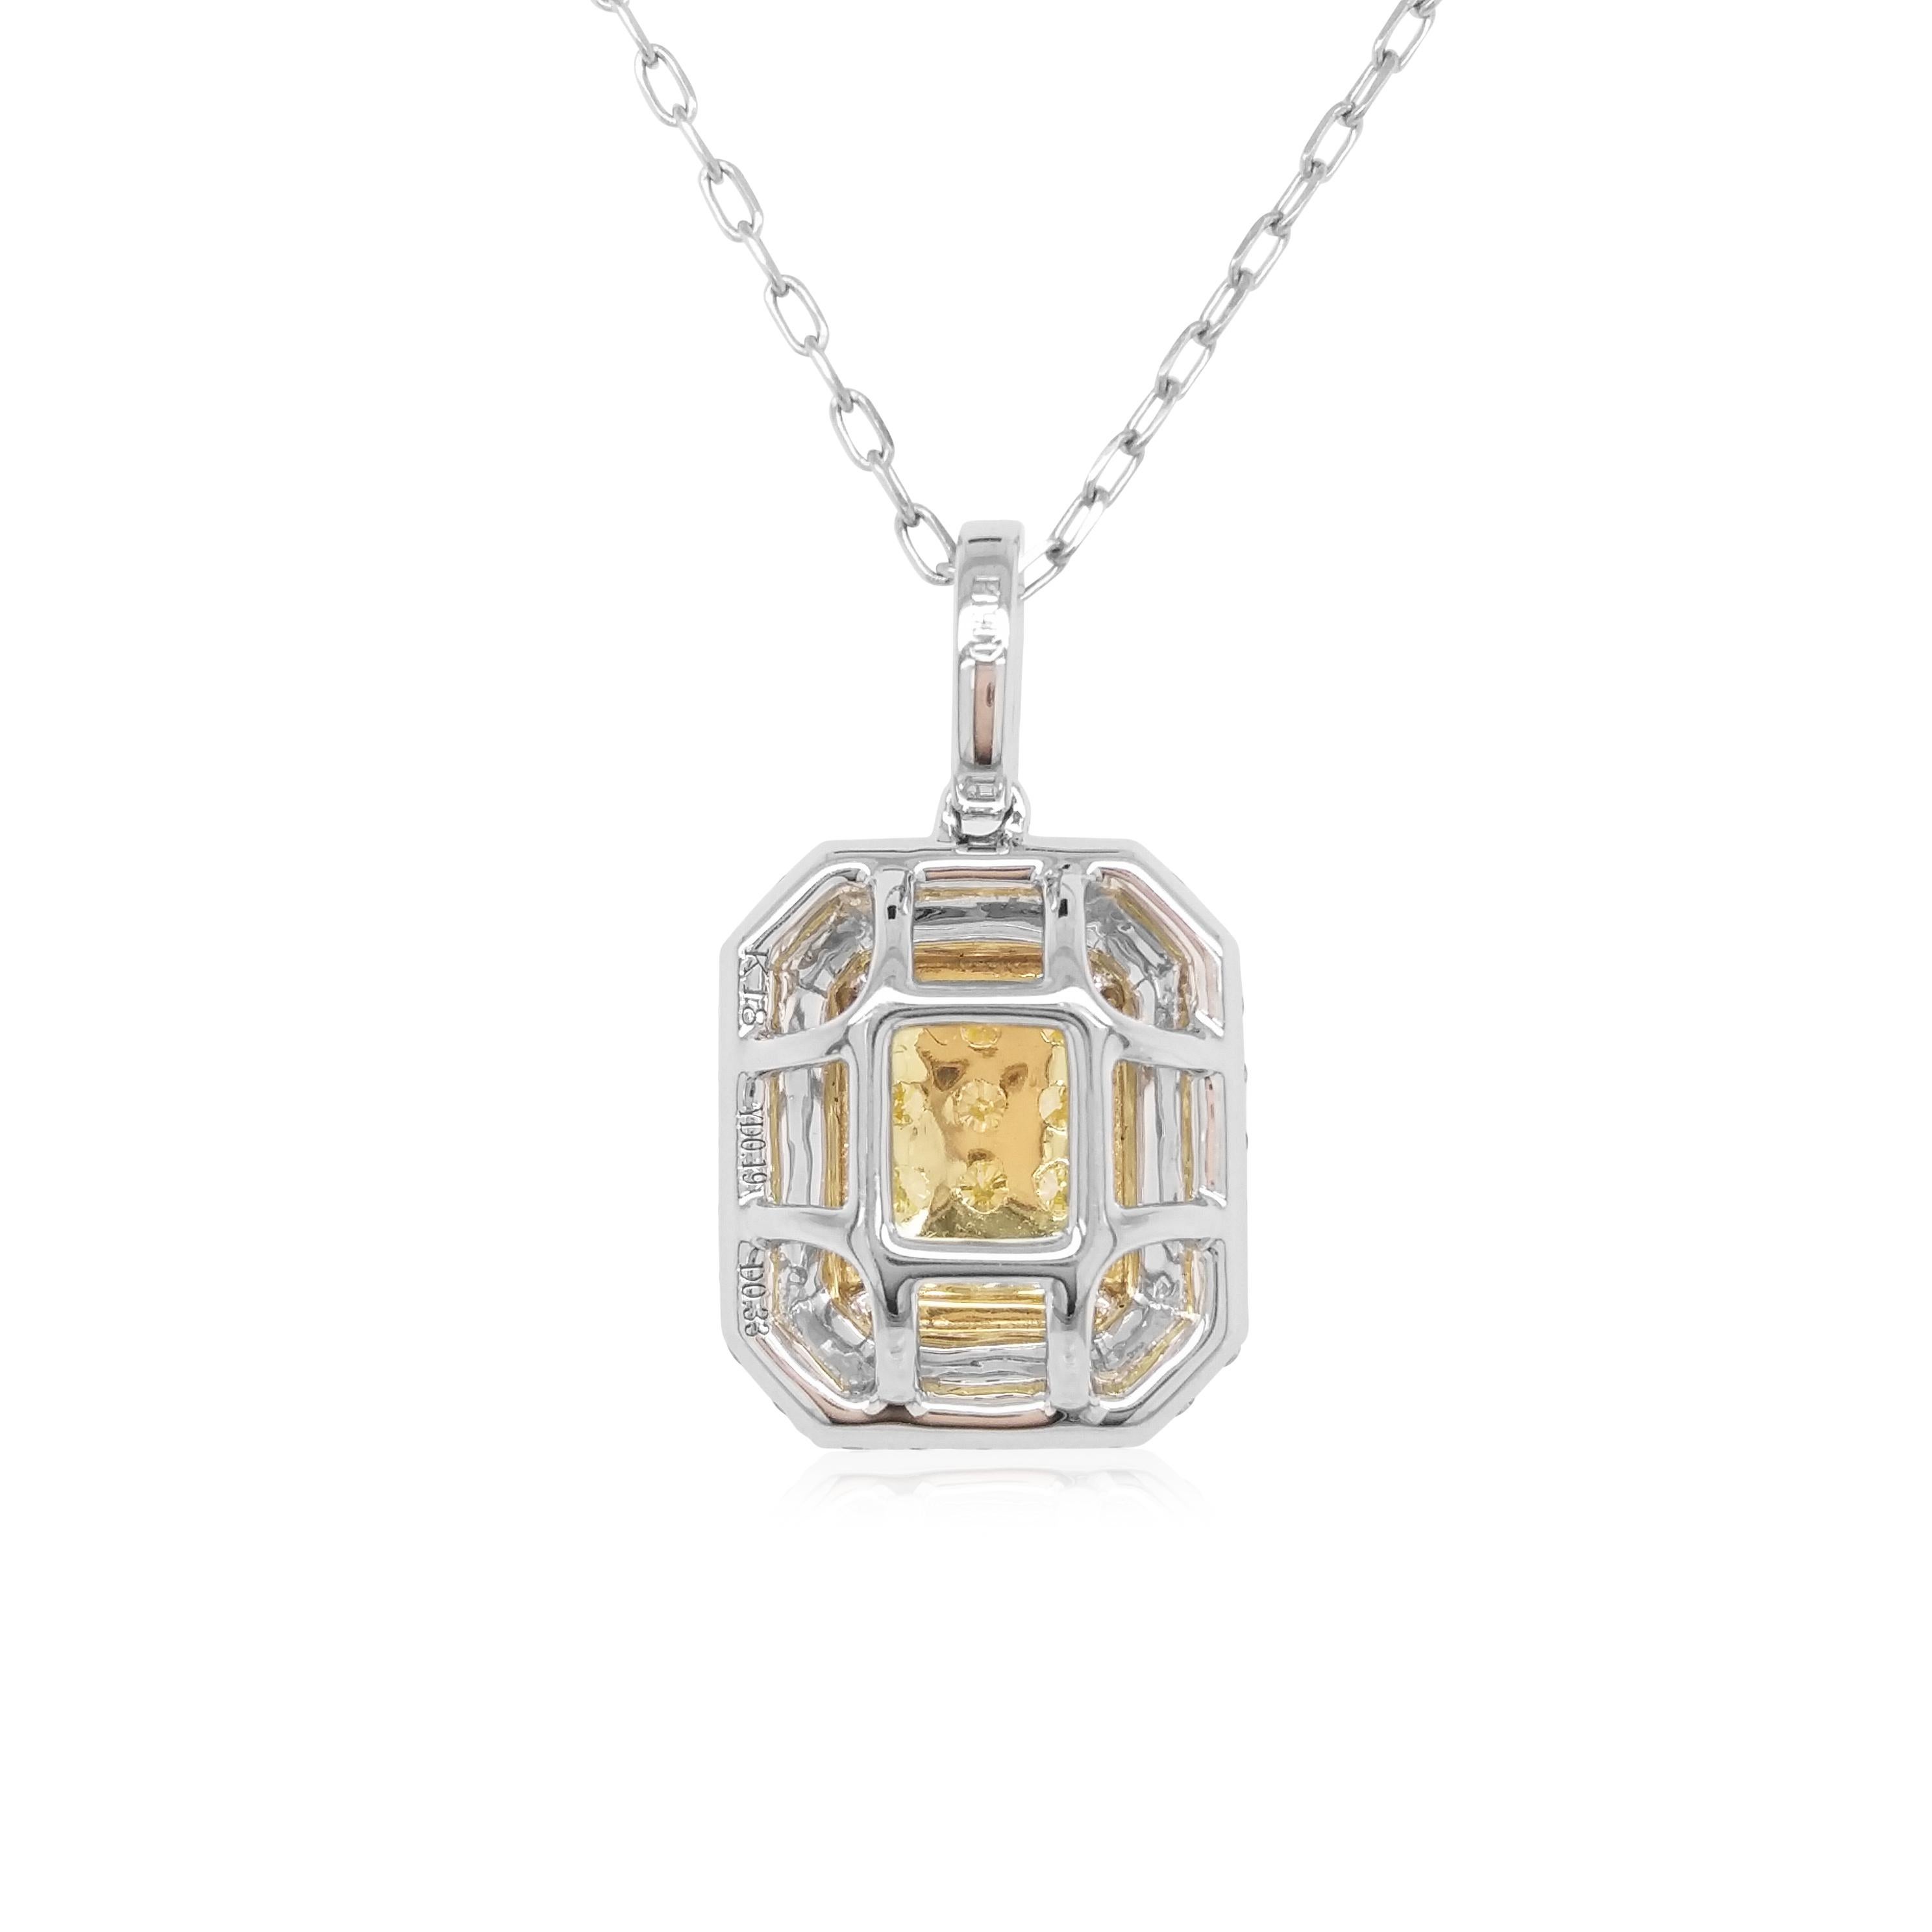 Cet élégant pendentif présente des diamants jaunes naturels au centre du motif, entourés d'auréoles de diamants blancs scintillants. La couleur riche de ces diamants est parfaitement complétée par la délicate platine et l'or jaune 18 carats.